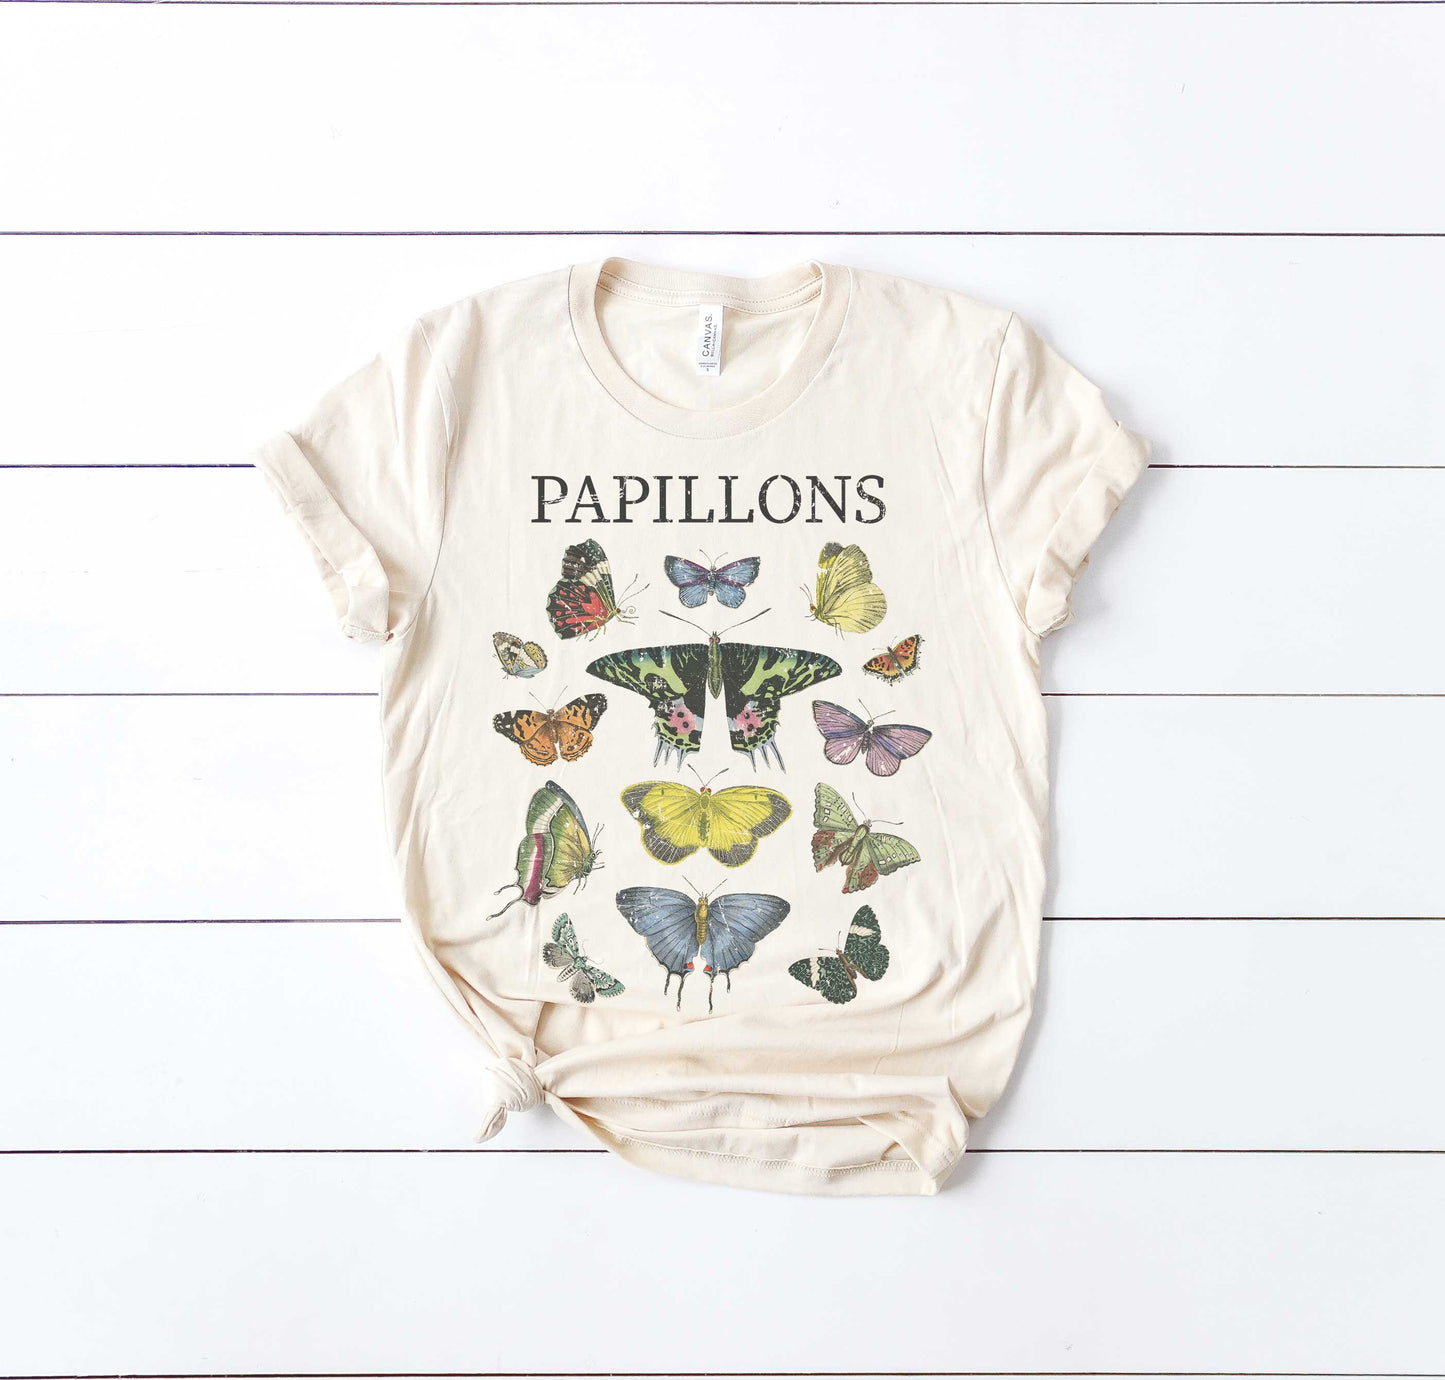 Papillons Butterflies Butterfly Ultra Soft Graphic Tee Unisex Soft Tee T-shirt for Women or Men